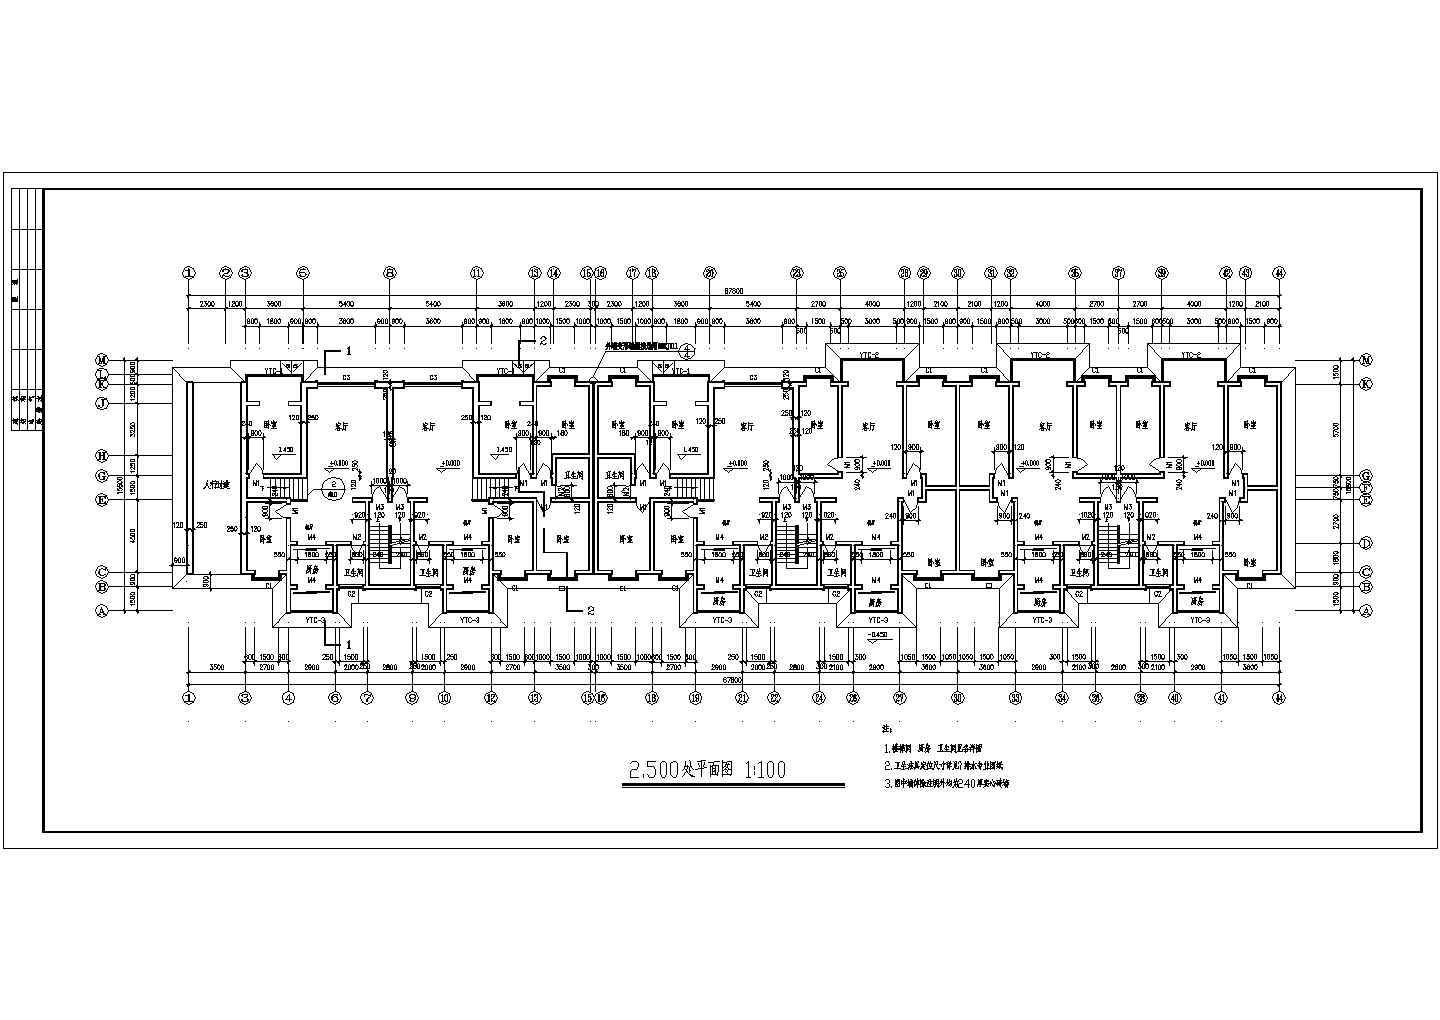  六层三单元5583平米两种户型节能住宅CAD设计图